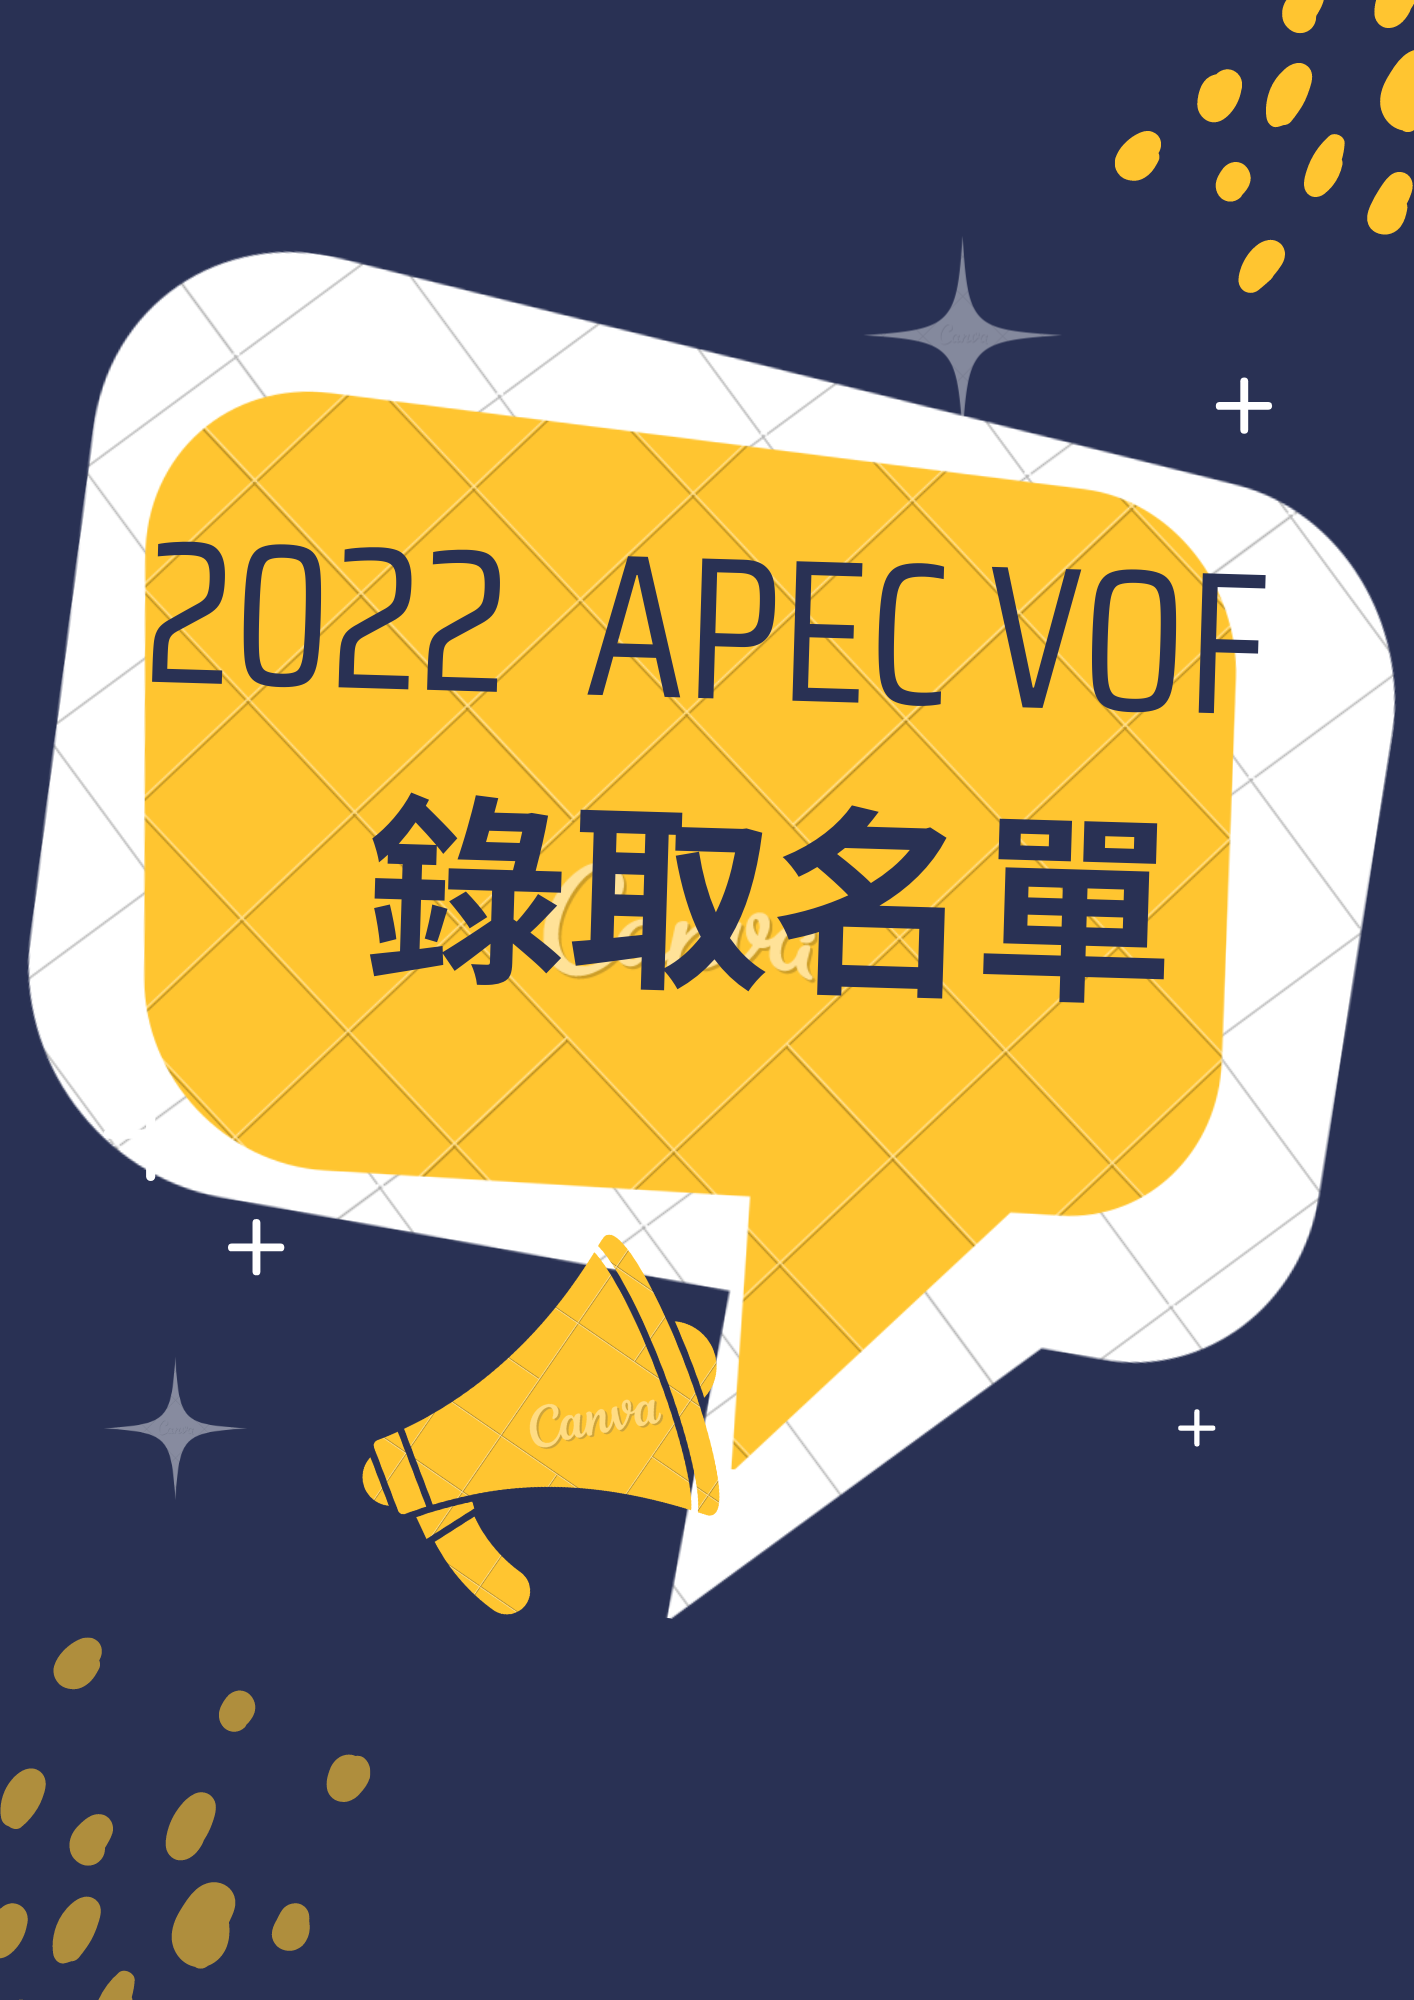 【公告】2022 APEC未來之聲Voices of the Future 青年培訓營甄選結果